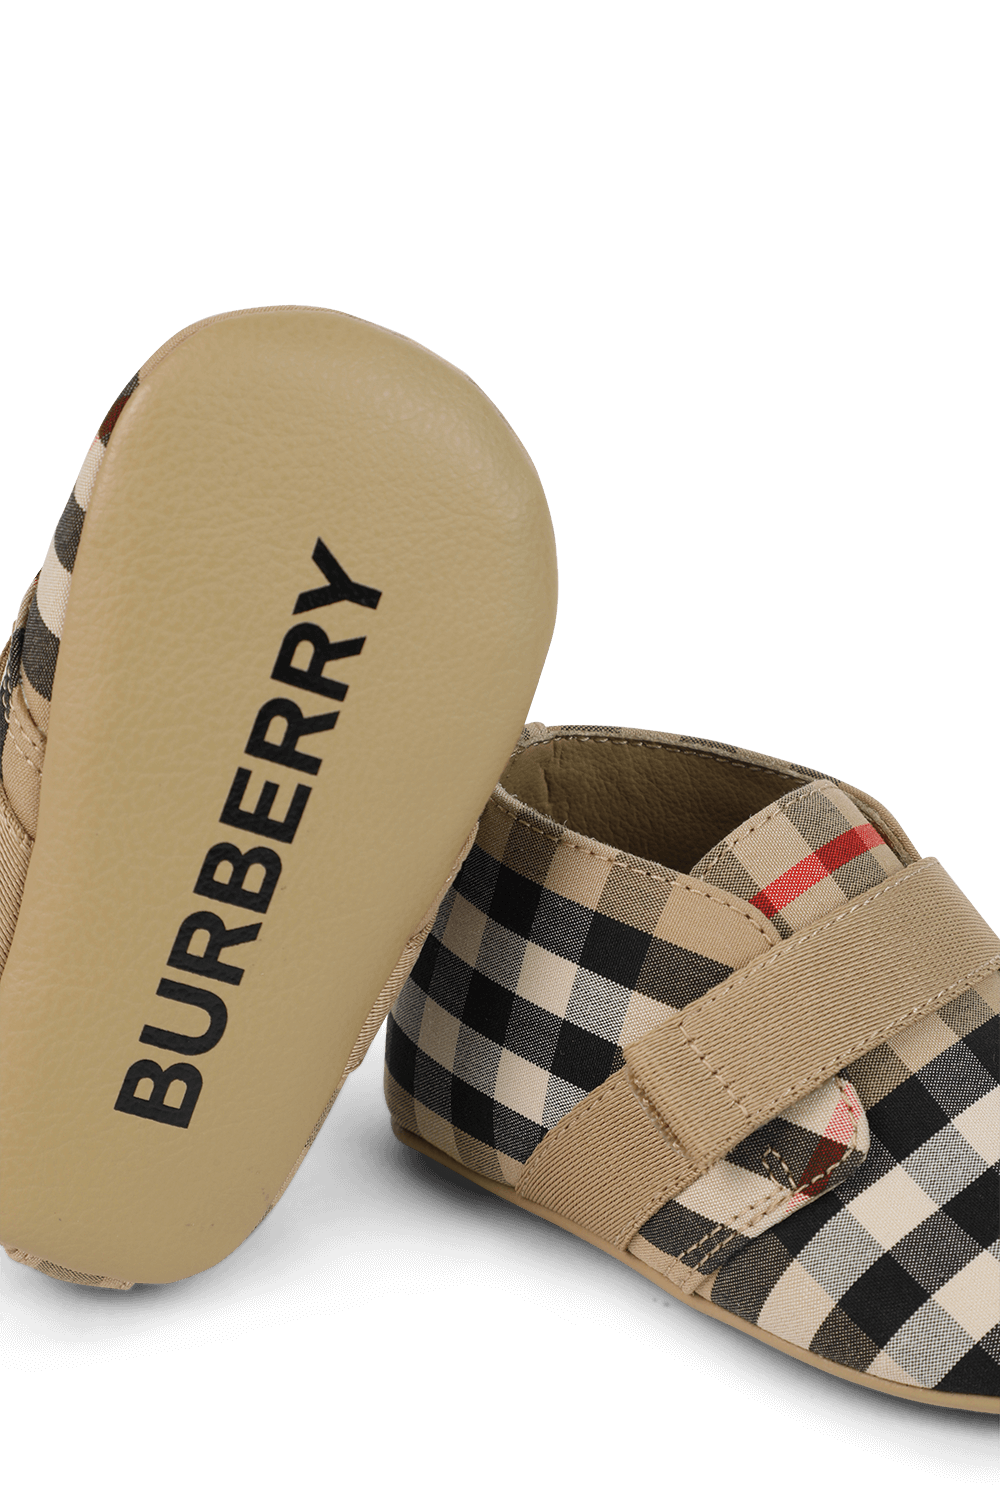 מידות 15-19 נעלי תינוקות בהדפס אייקוני בהיר BURBERRY